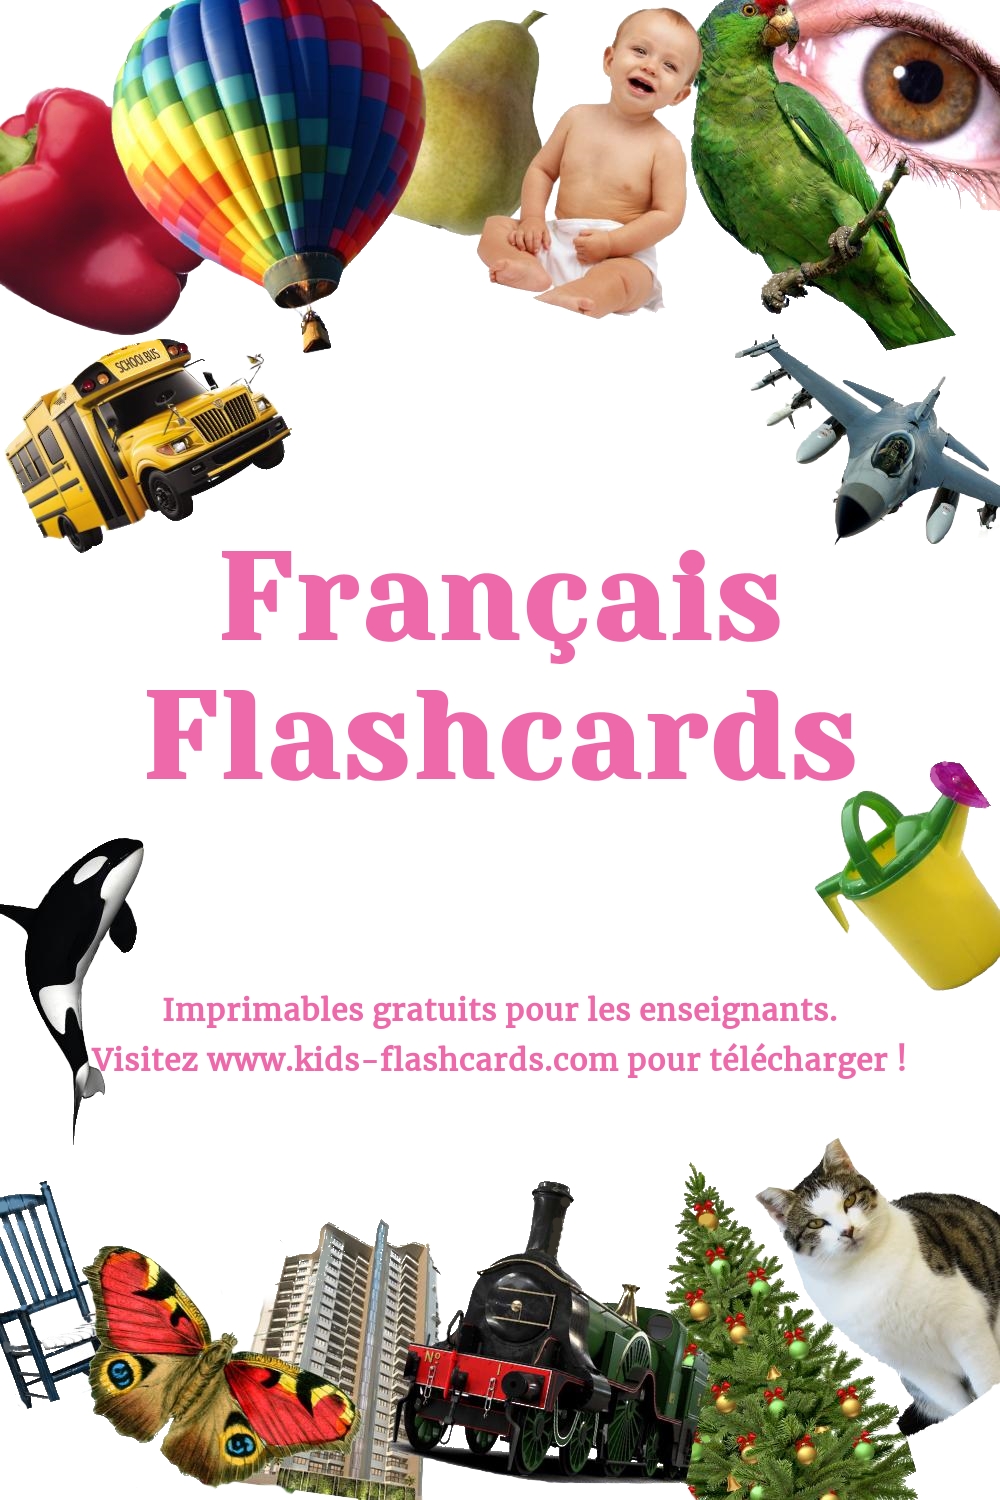 Imprimables gratuits en Français